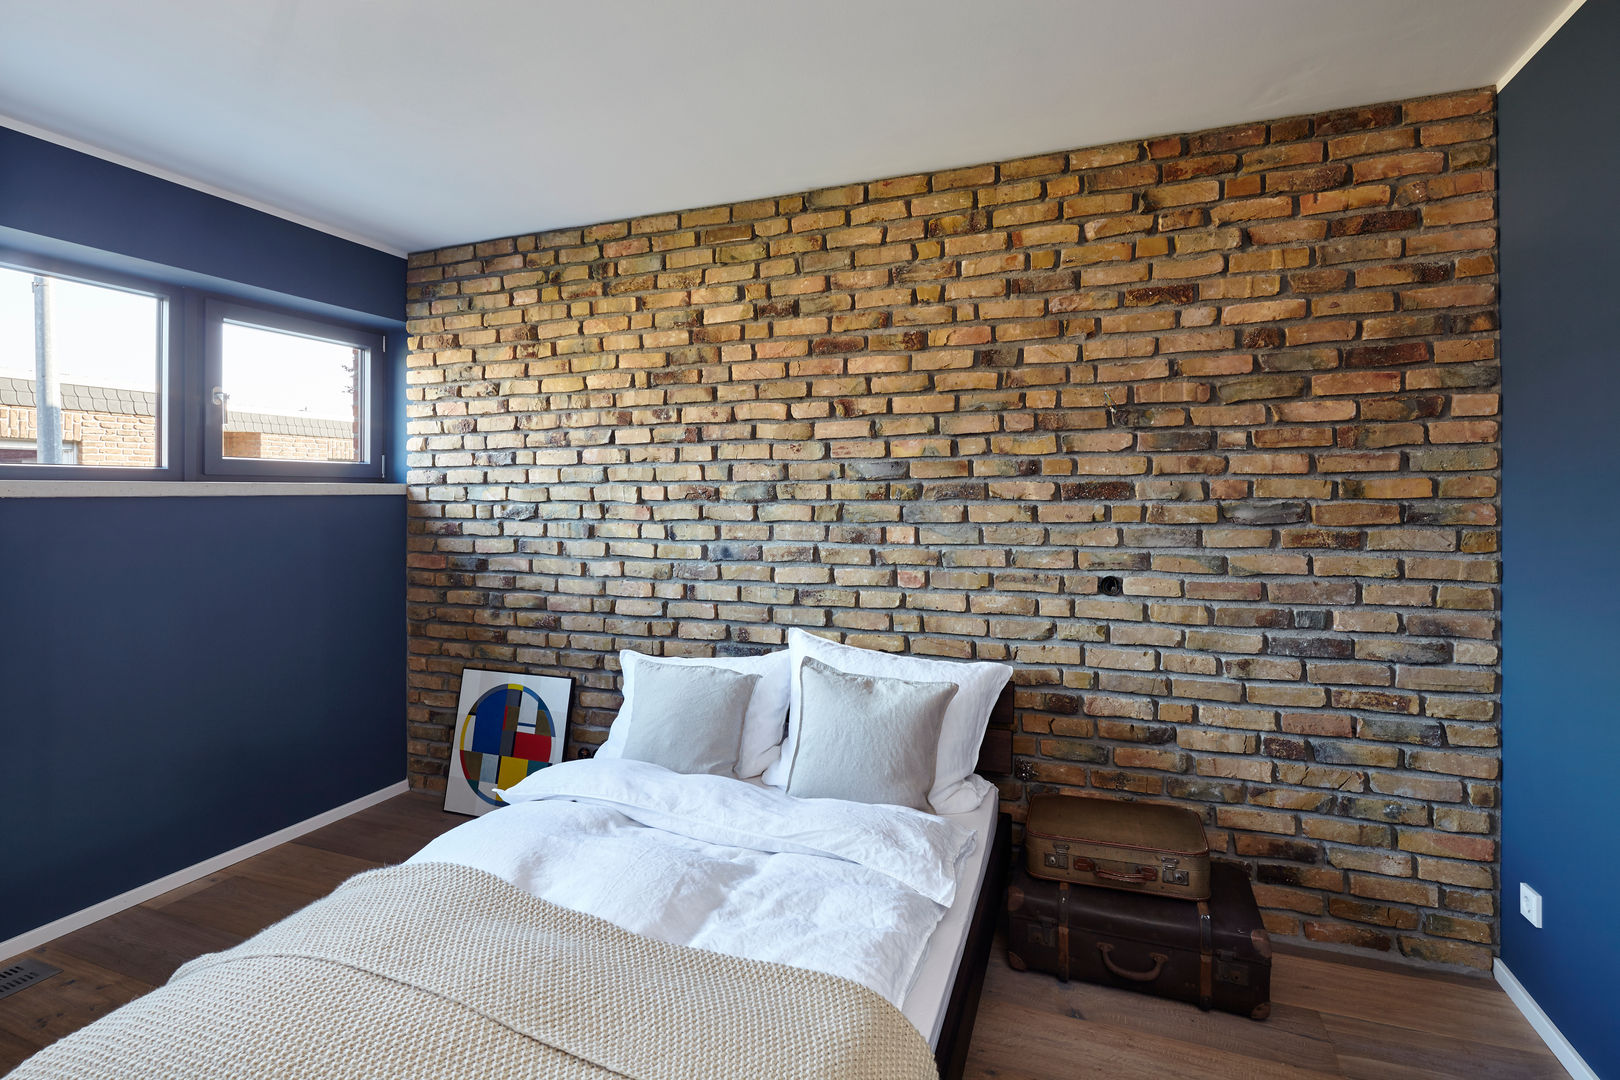 Haus I., Lioba Schneider Architekturfotografie Lioba Schneider Architekturfotografie Modern style bedroom Bricks